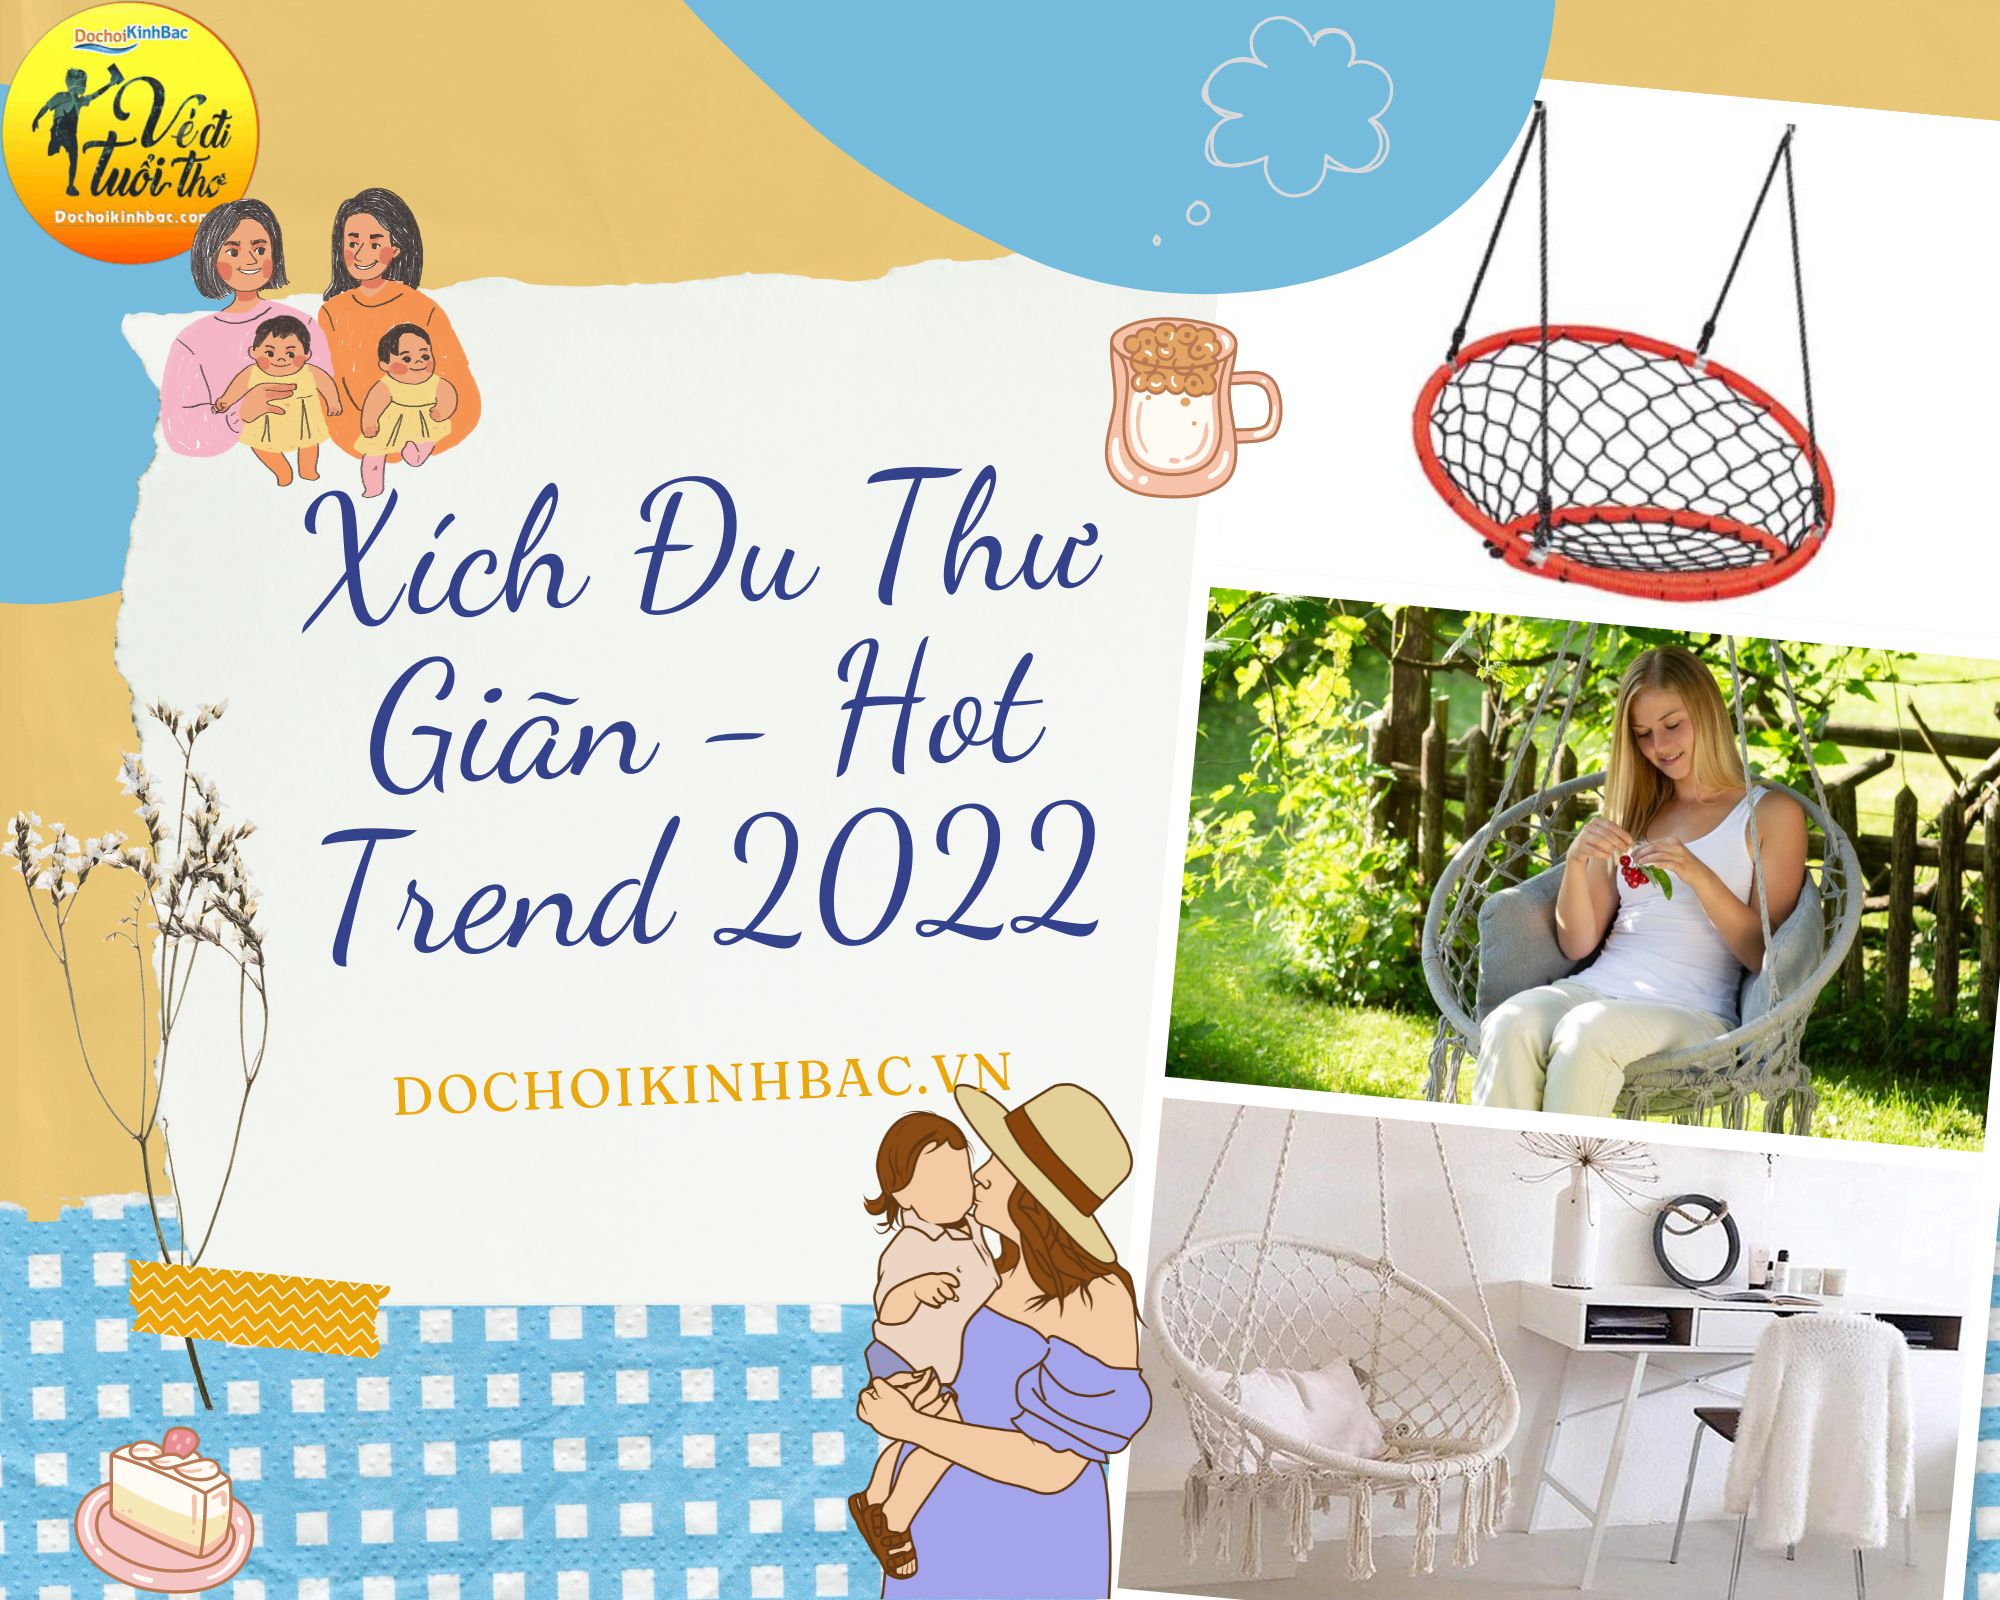 Xích đu thư giãn – lựa chọn bắt trend mới nhất 2022 tại Lùng Vai, Mường Khương, Lào Cai